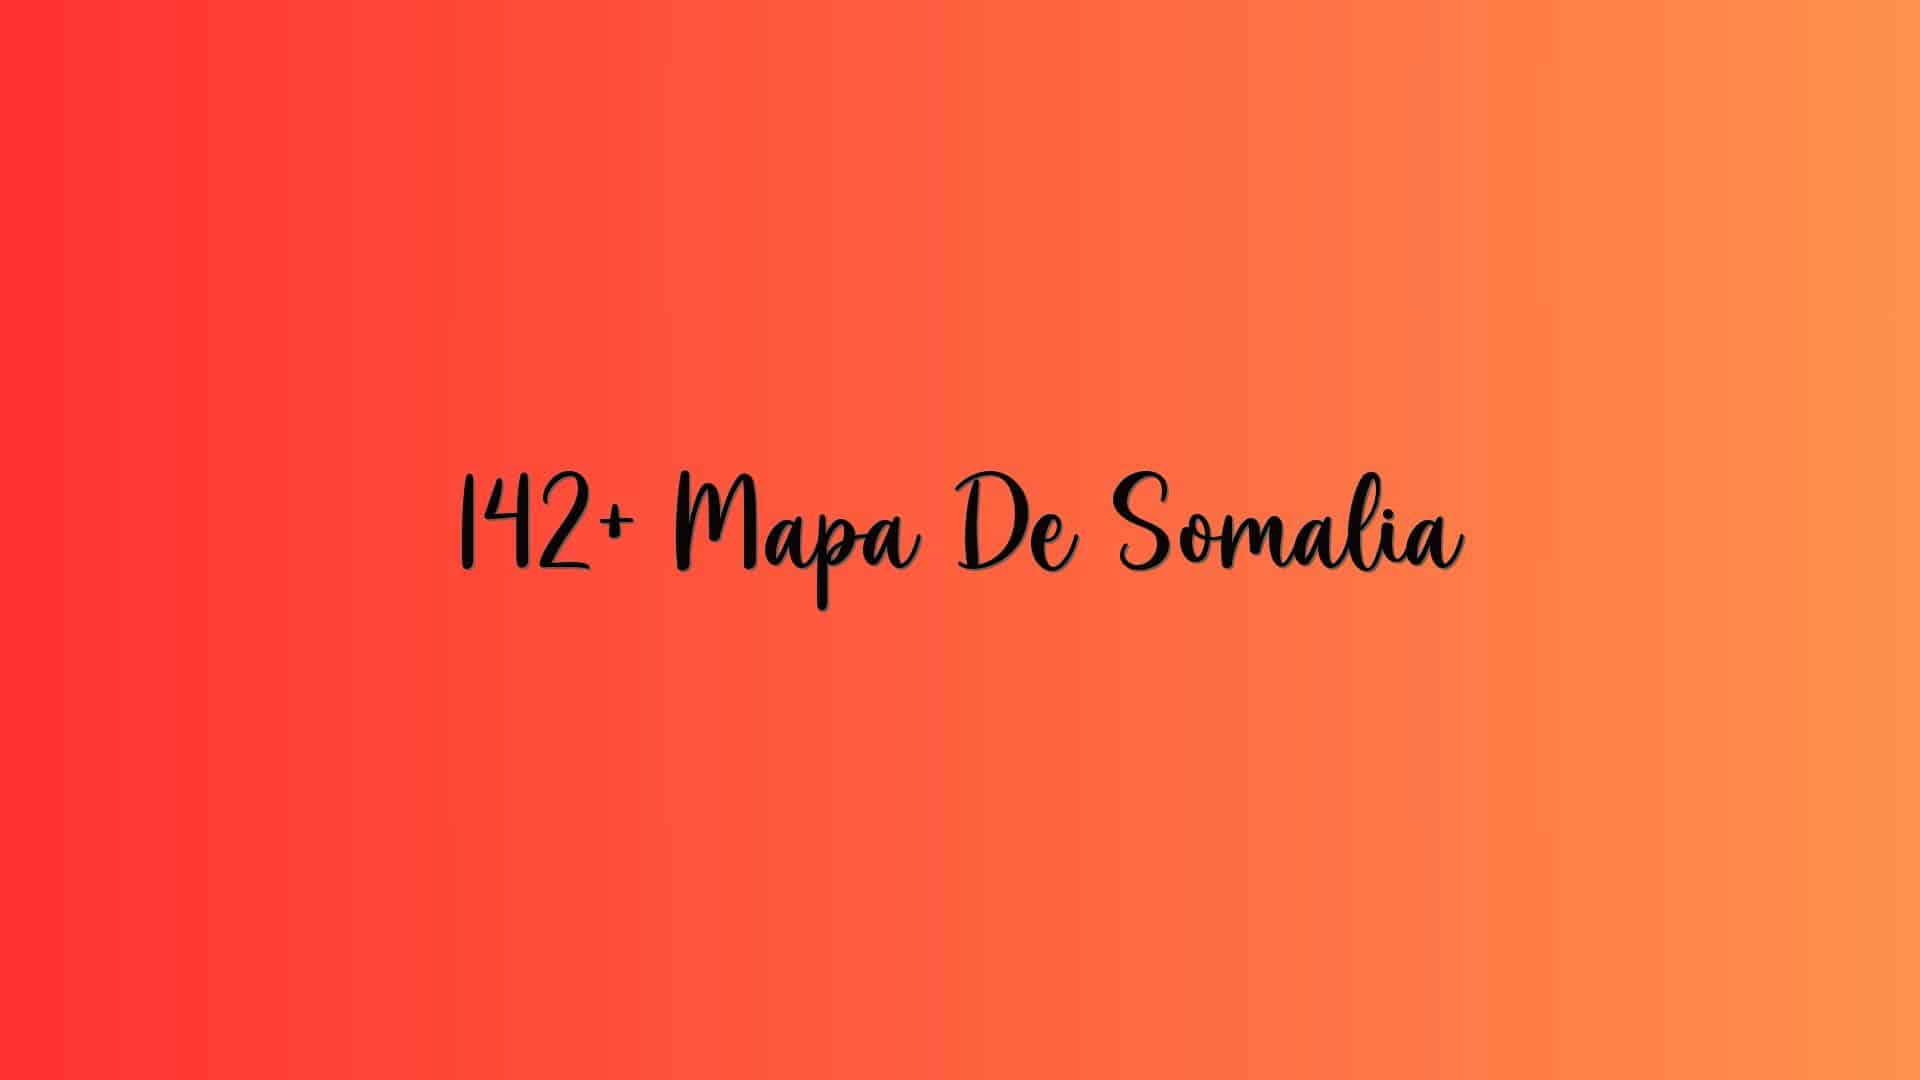 142+ Mapa De Somalia